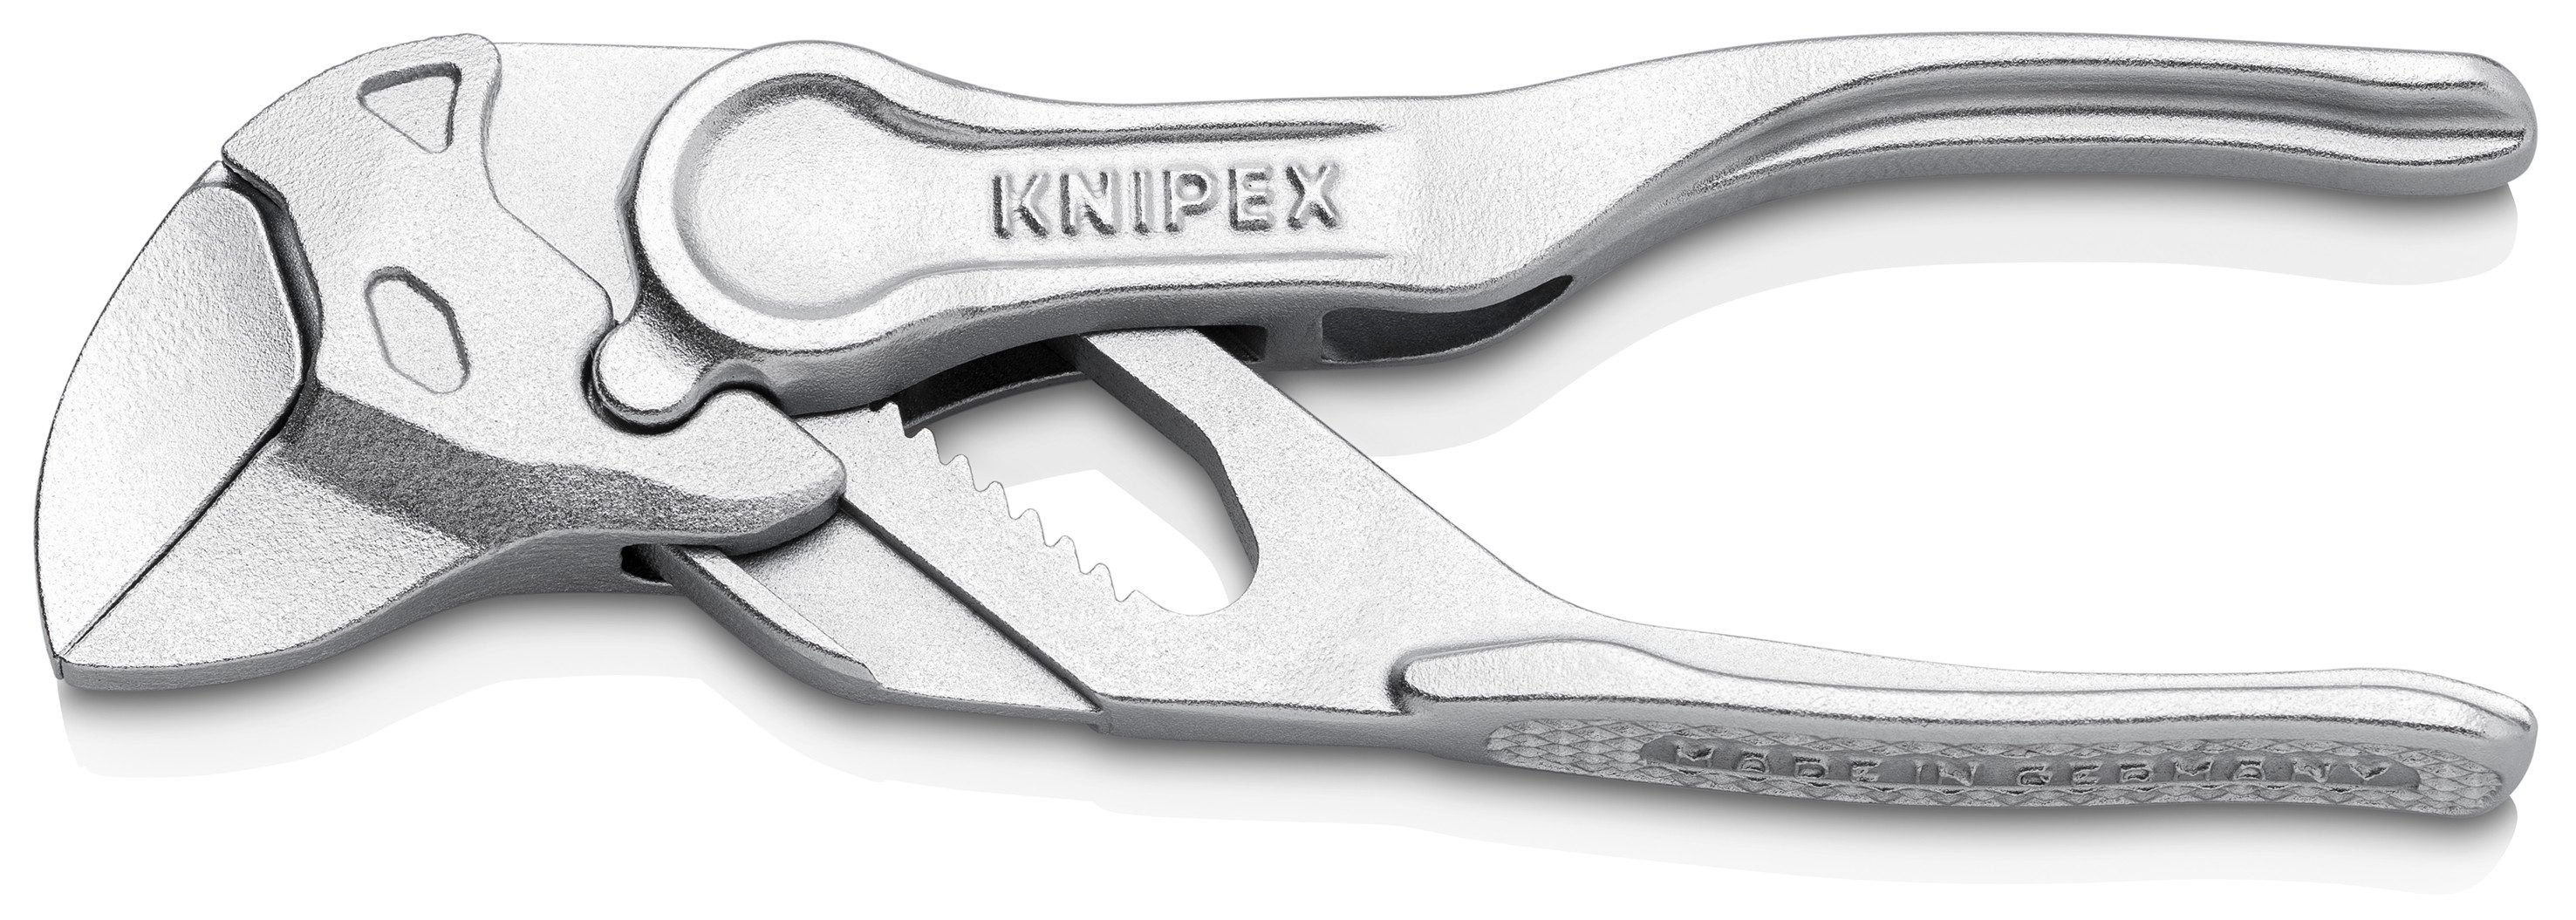 Knipex Wasserpumpenzange KNIPEX 86 04 100 Щипцыschlüssel XS 100 mm verchromt Zange und Schraub